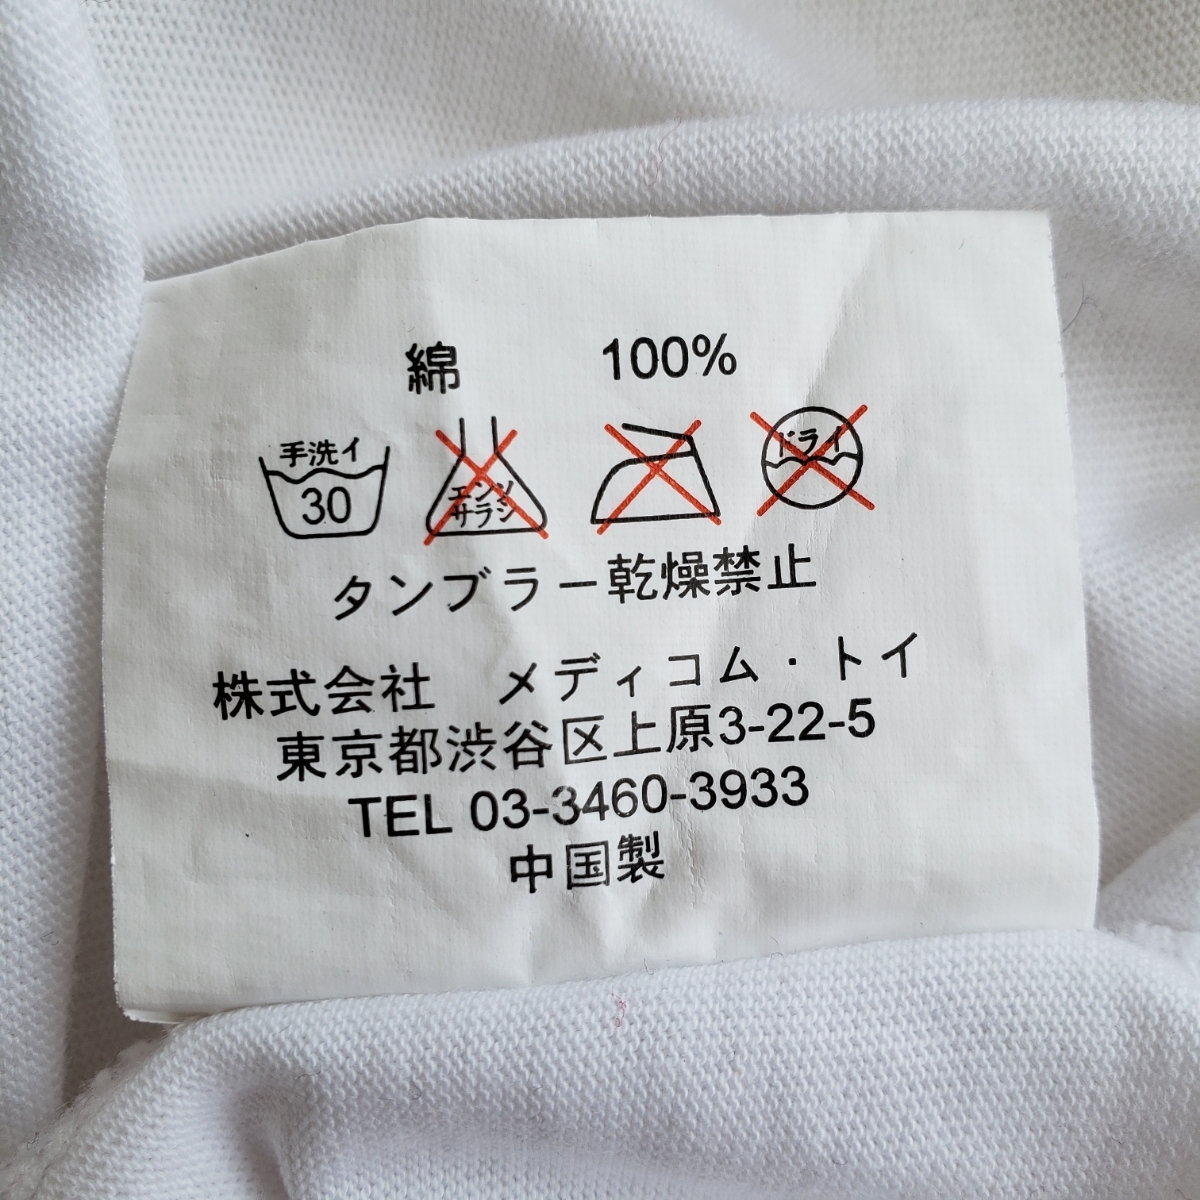 Mサイズ original fake Tシャツ kaws オリジナル フェイク カウズ tee 白 ホワイト white メディコムトイ kaws holiday JAPAN T-shirt_画像7